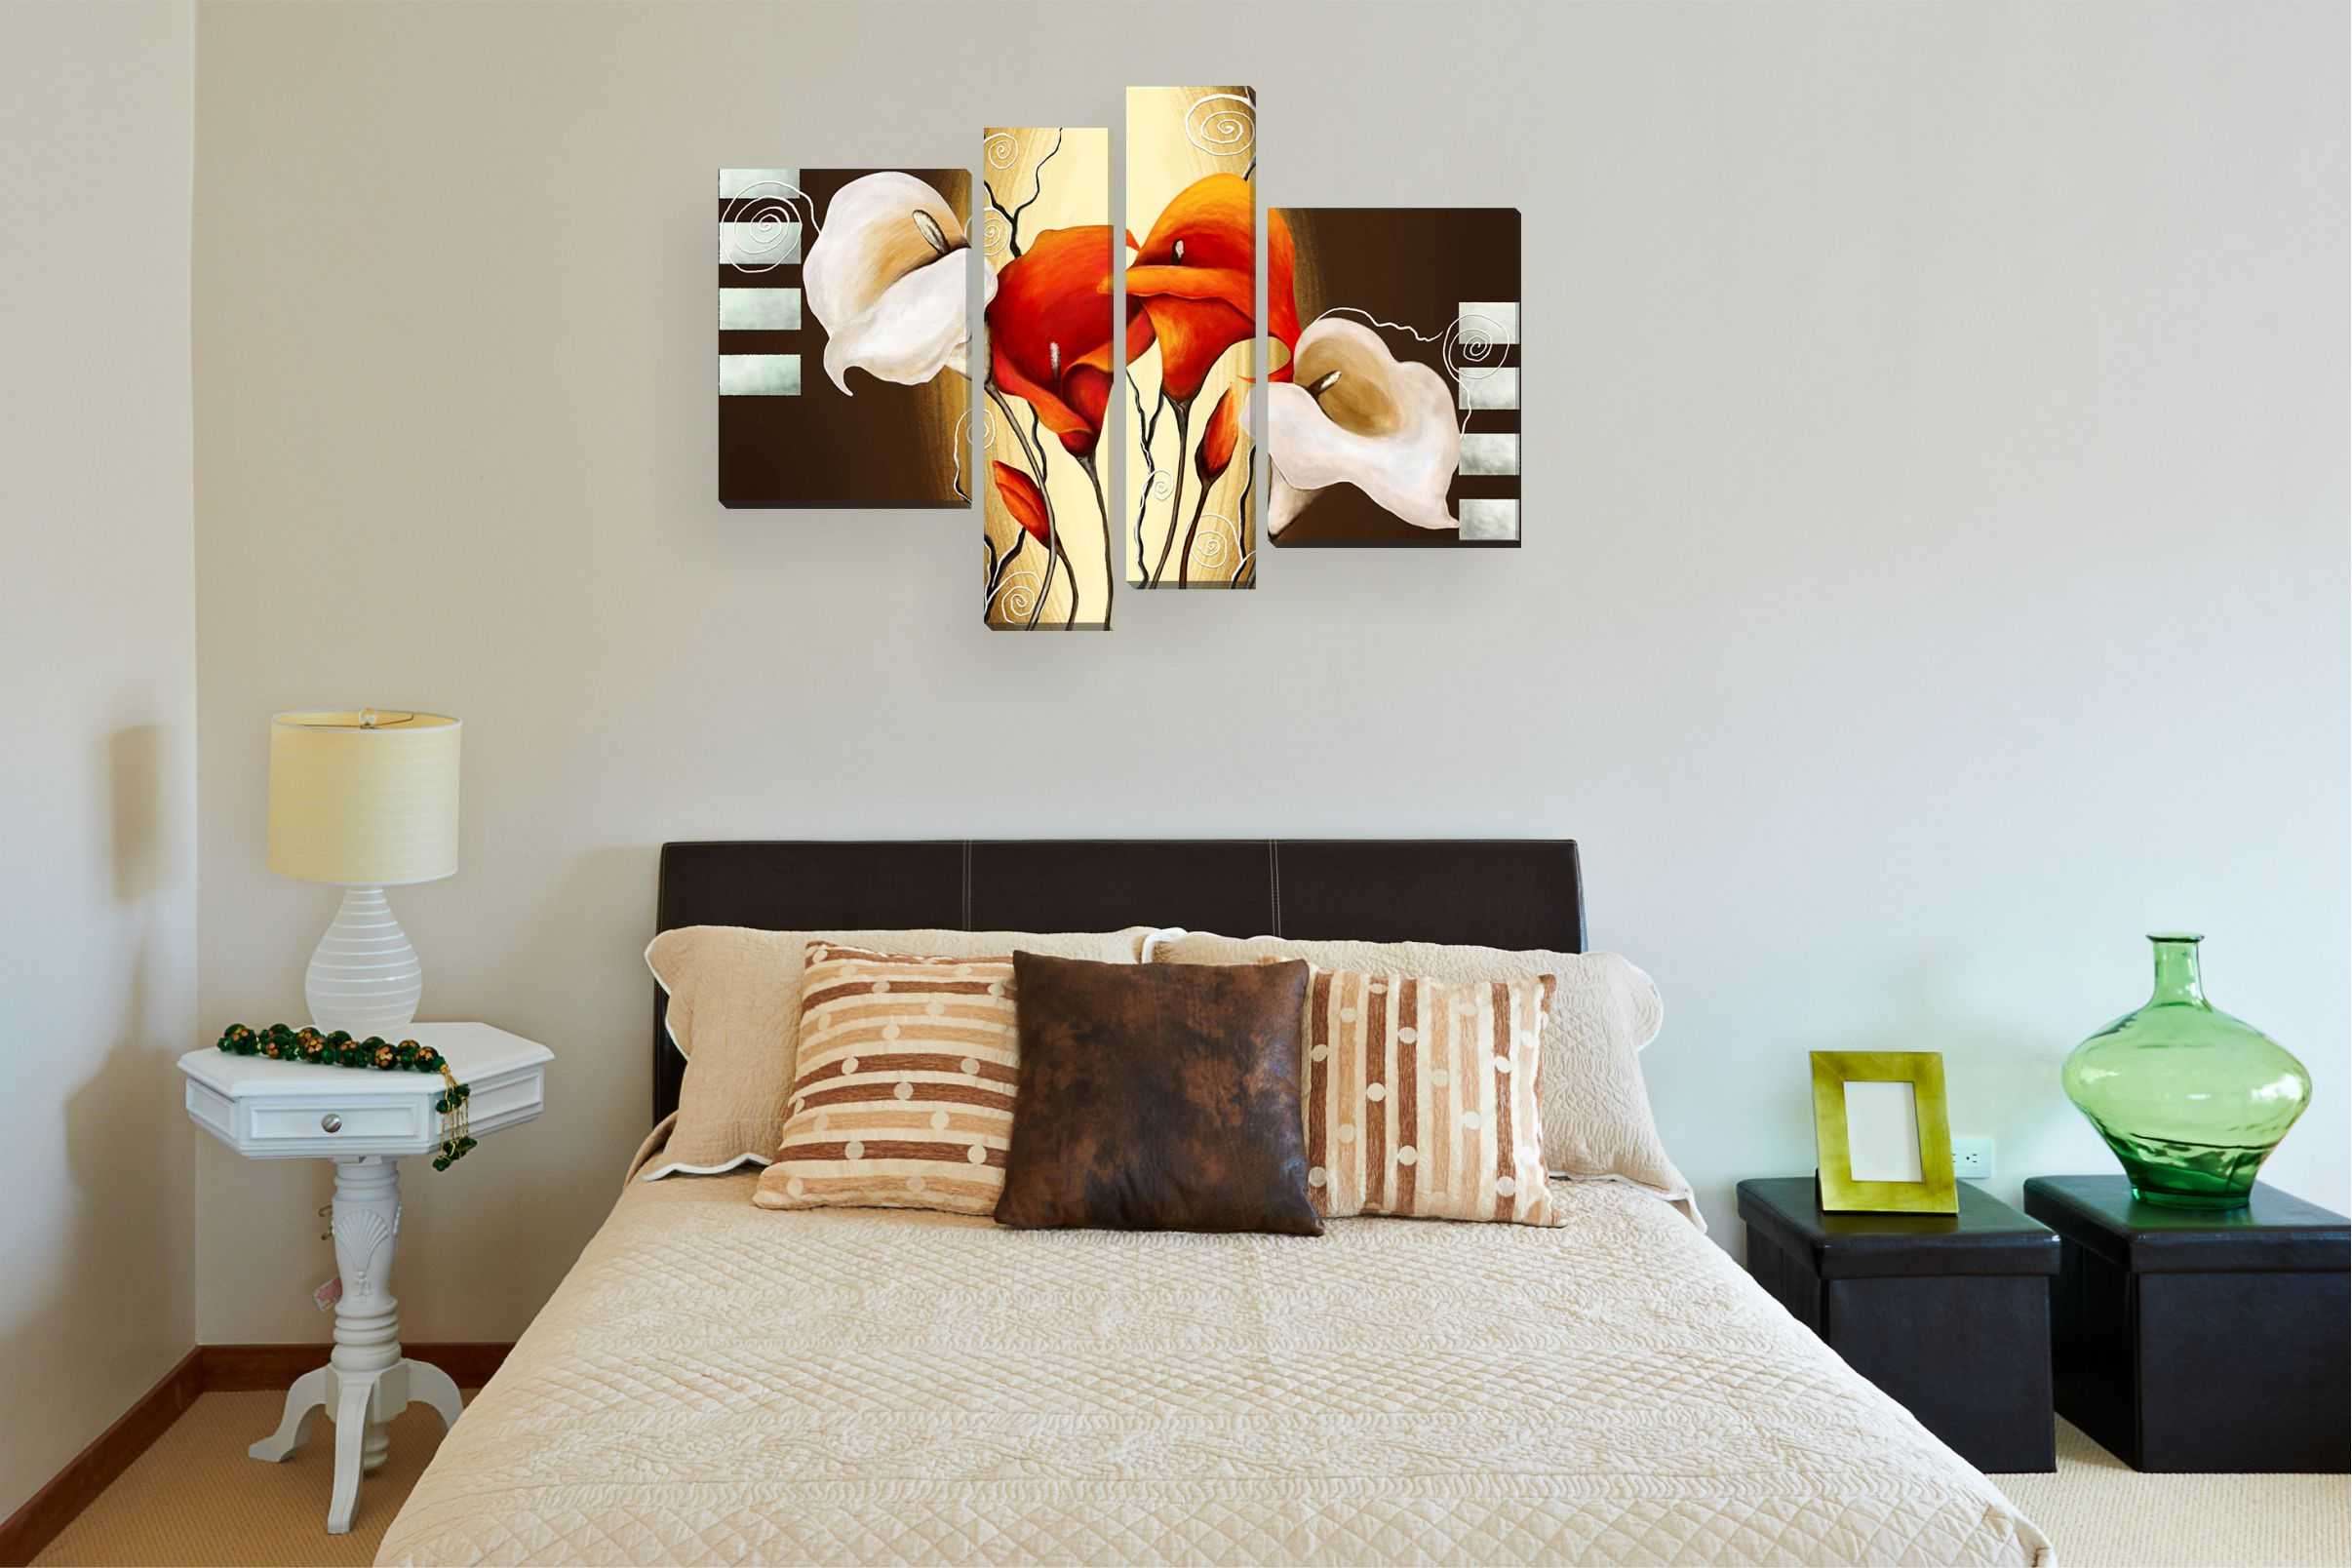 Оформление стены в спальне над кроватью: фото лучших идей, что повесить. реальные примеры красивого декора и дизайна